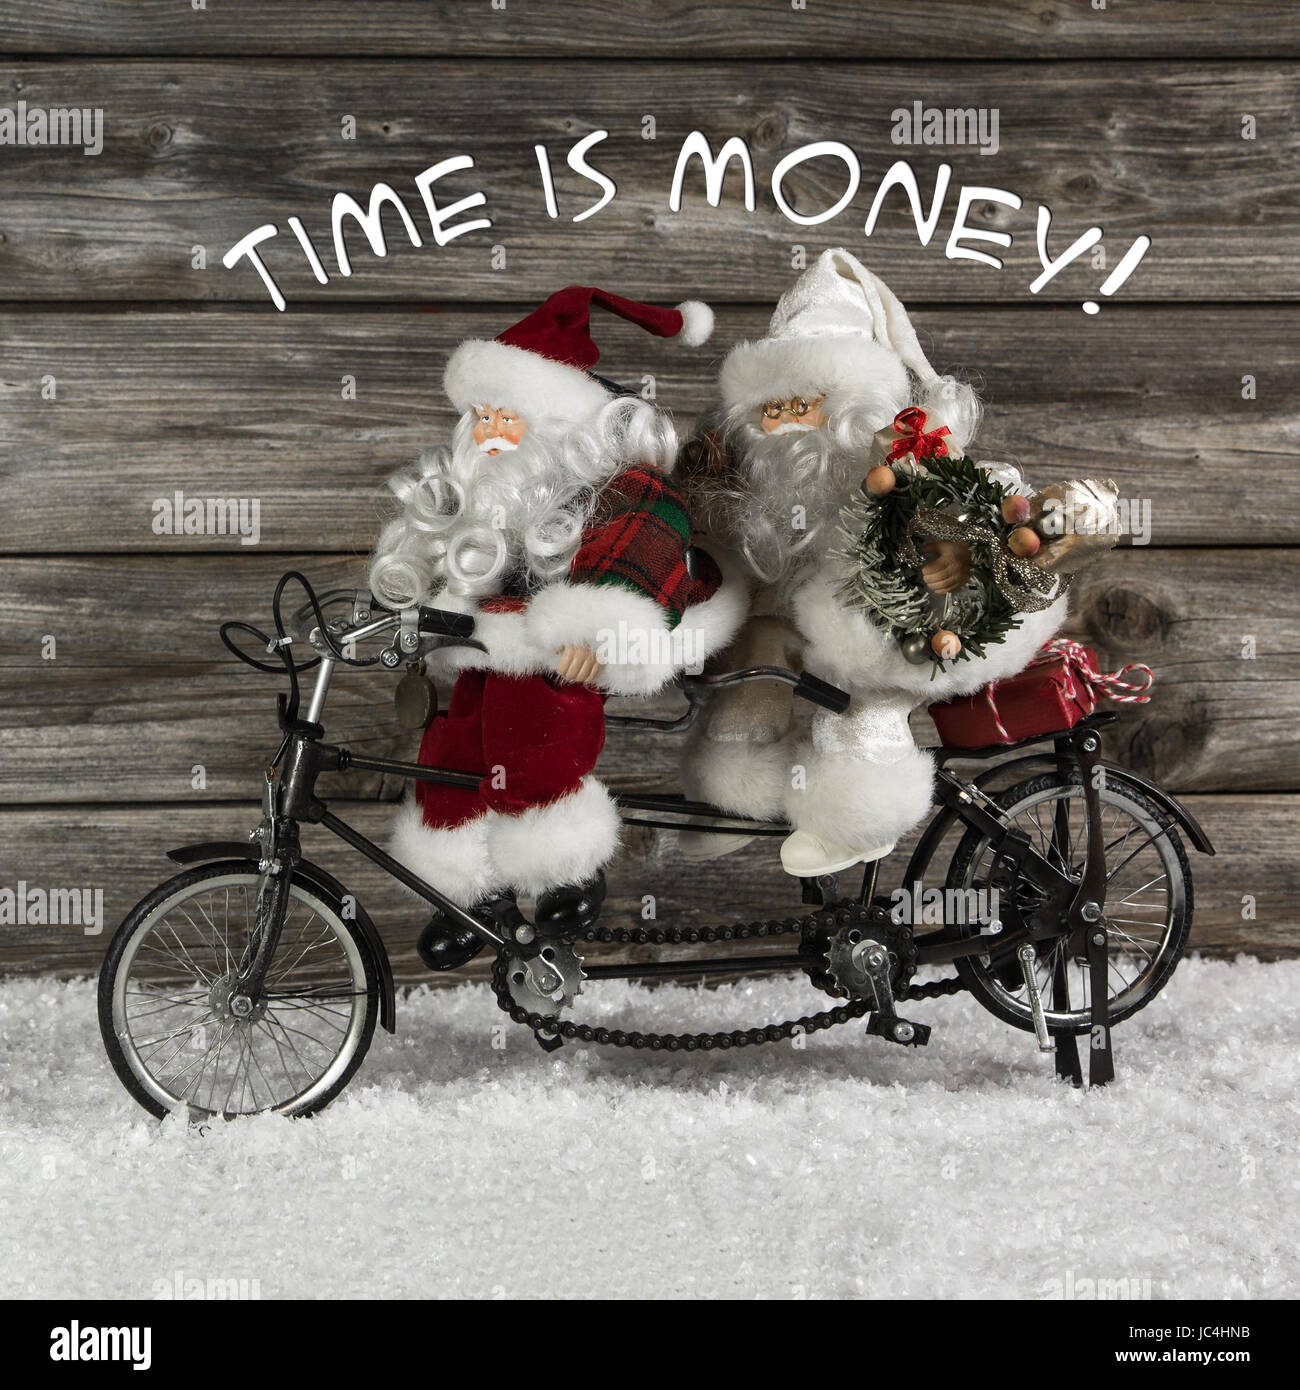 Il tempo è denaro - santa claus team in fretta per comprare i regali di Natale. Funny foto in stile vintage con un vecchio bike tandem di stagno. Foto Stock